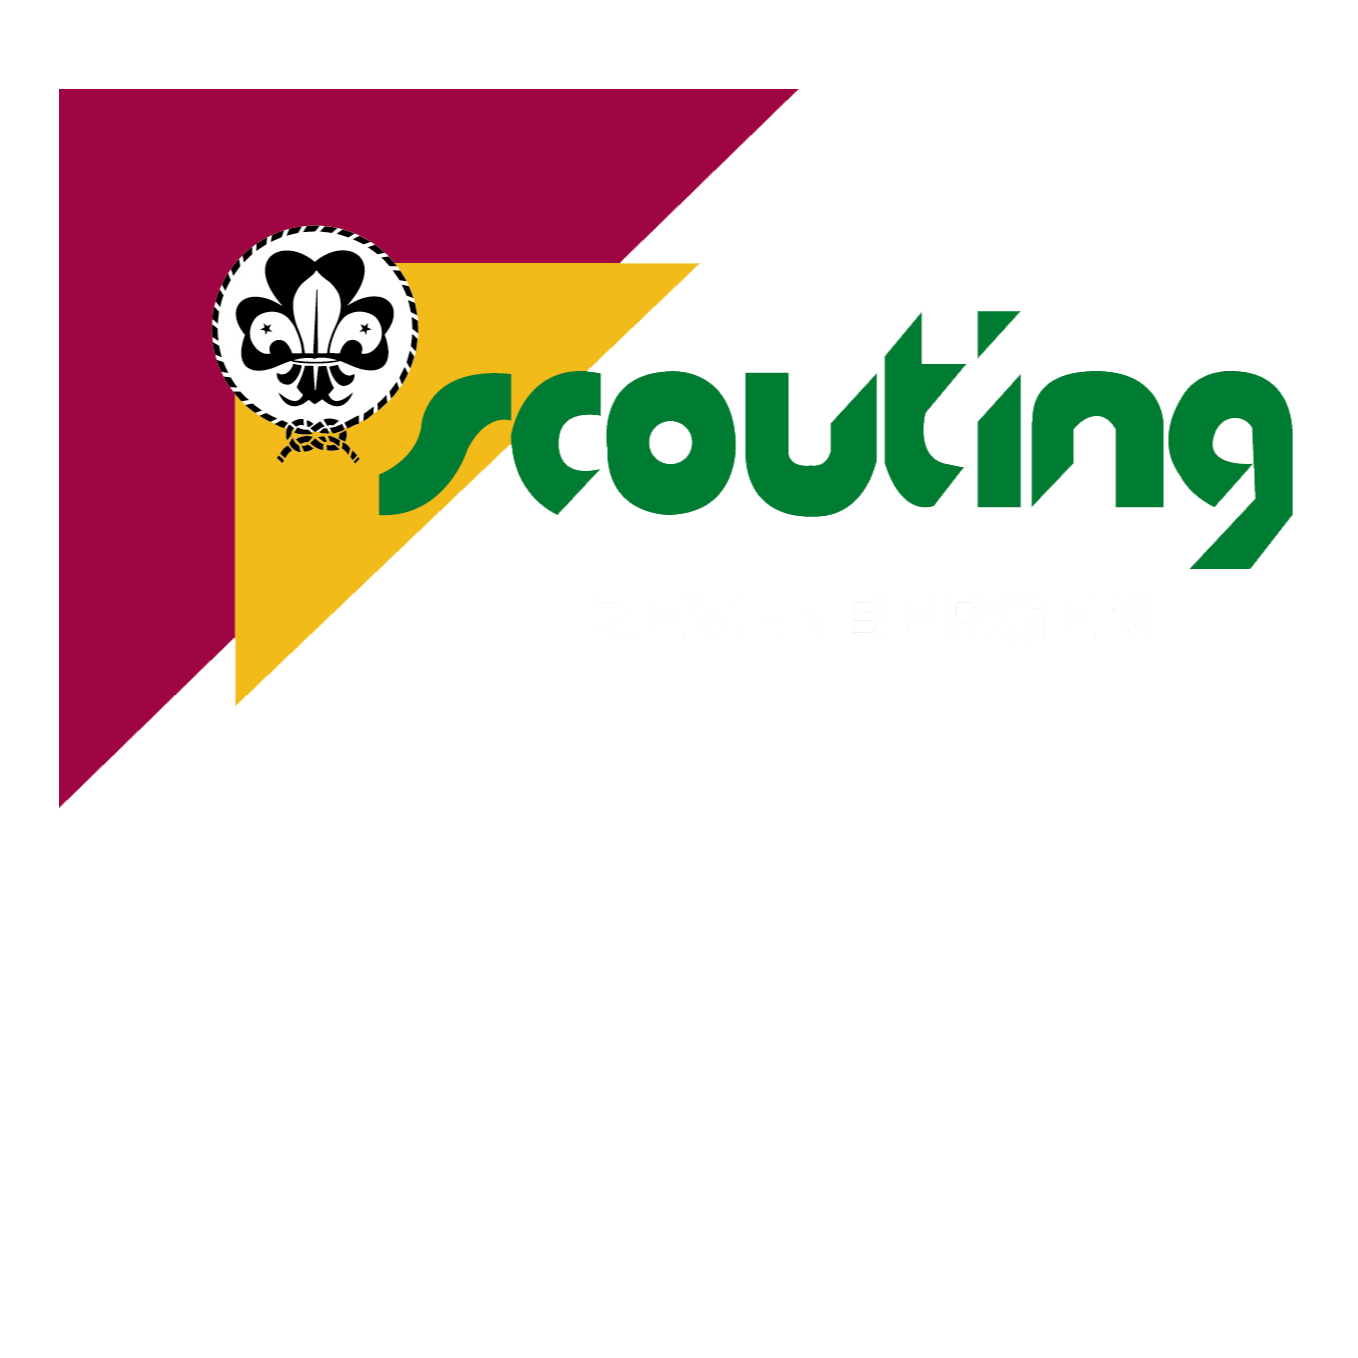 Scouting Zevenbergen